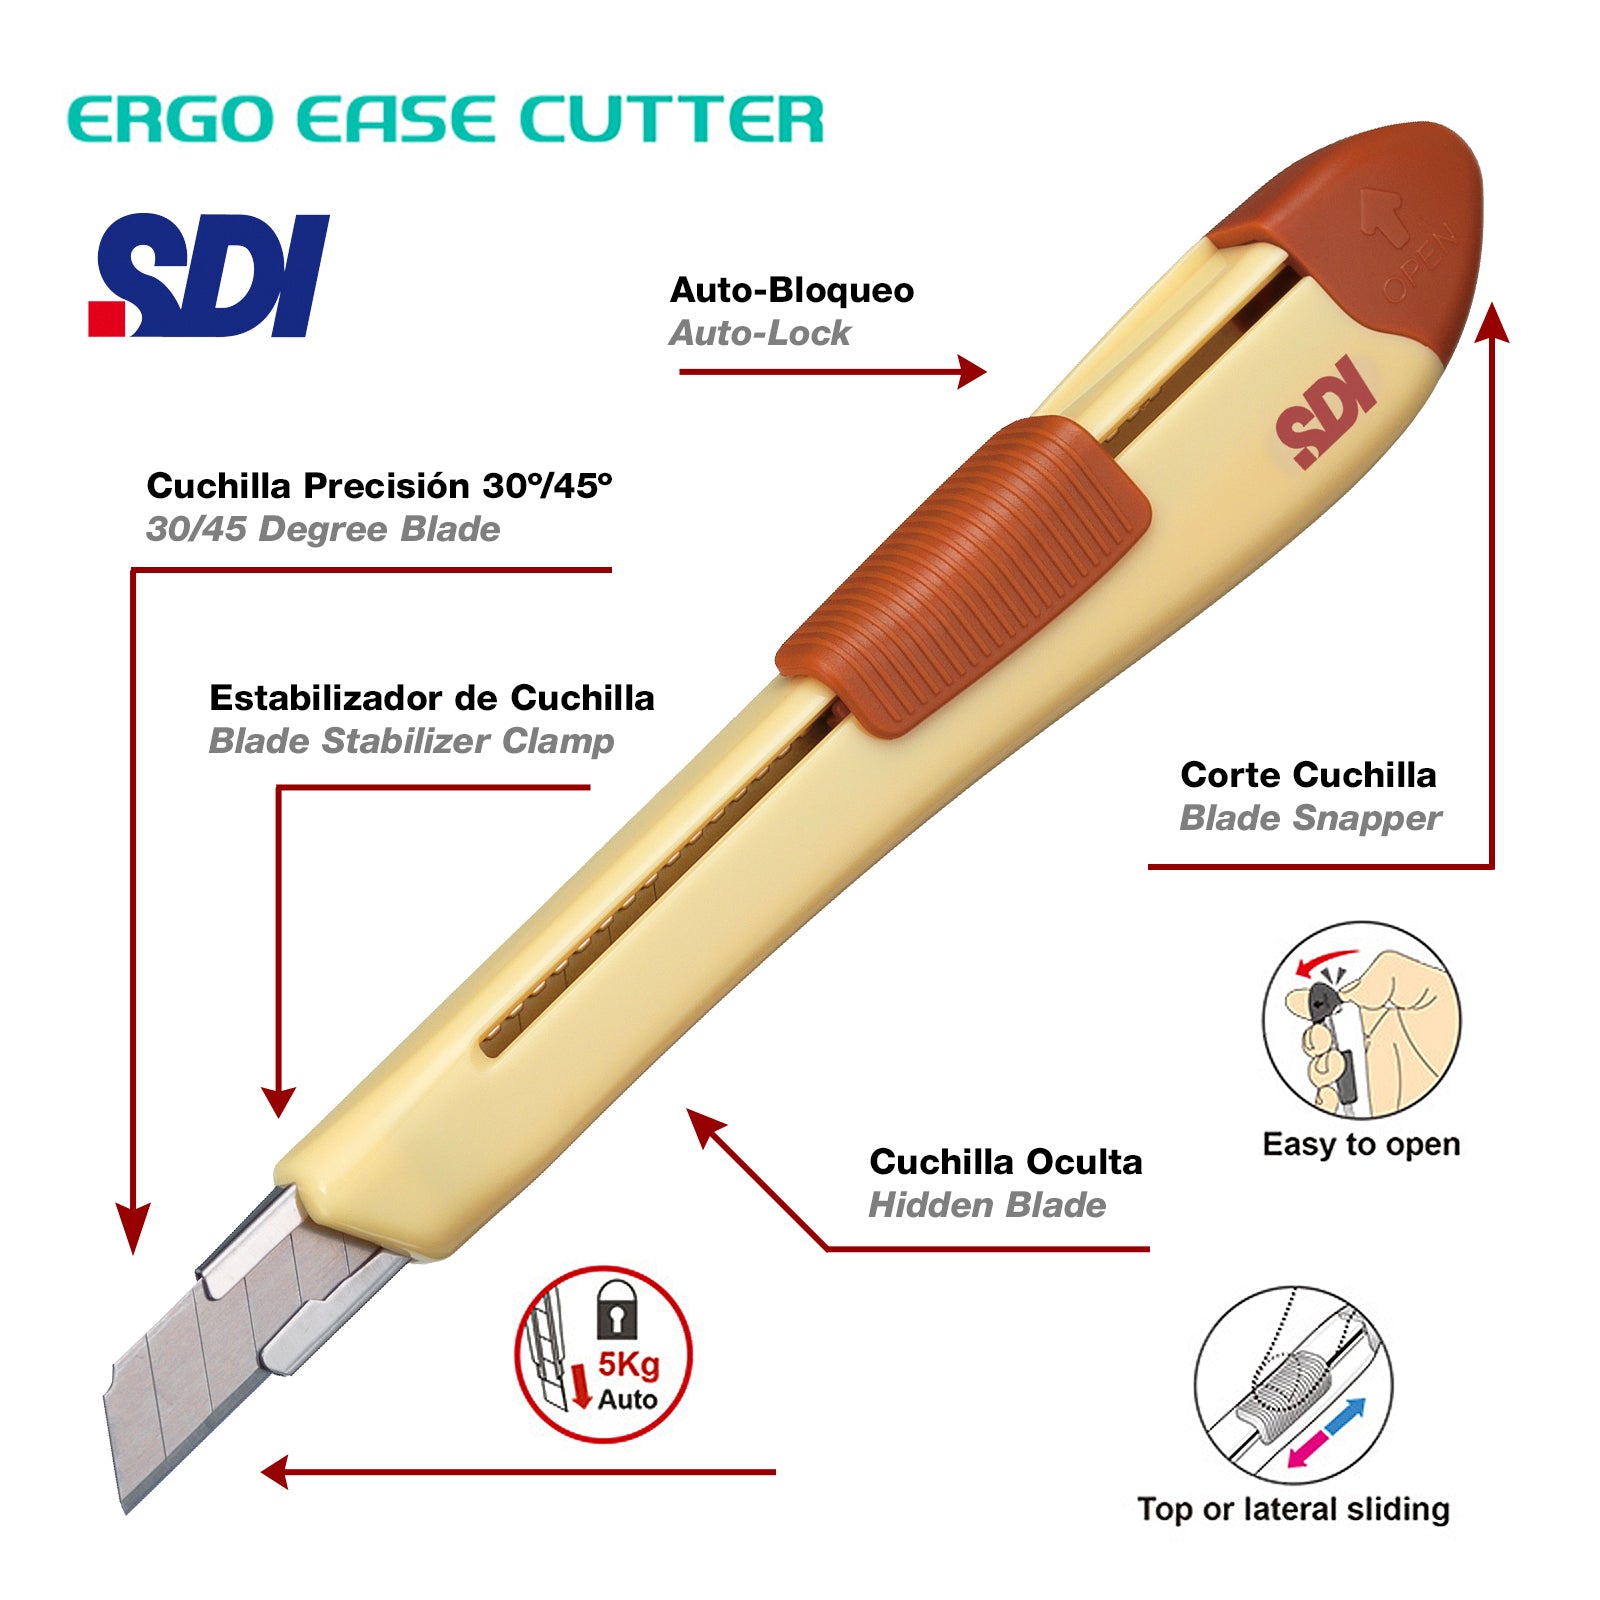 Sdi Ergo Ease - Cutter Para Manualidades Con Diseño Ergonómico. Amarillo  con Ofertas en Carrefour